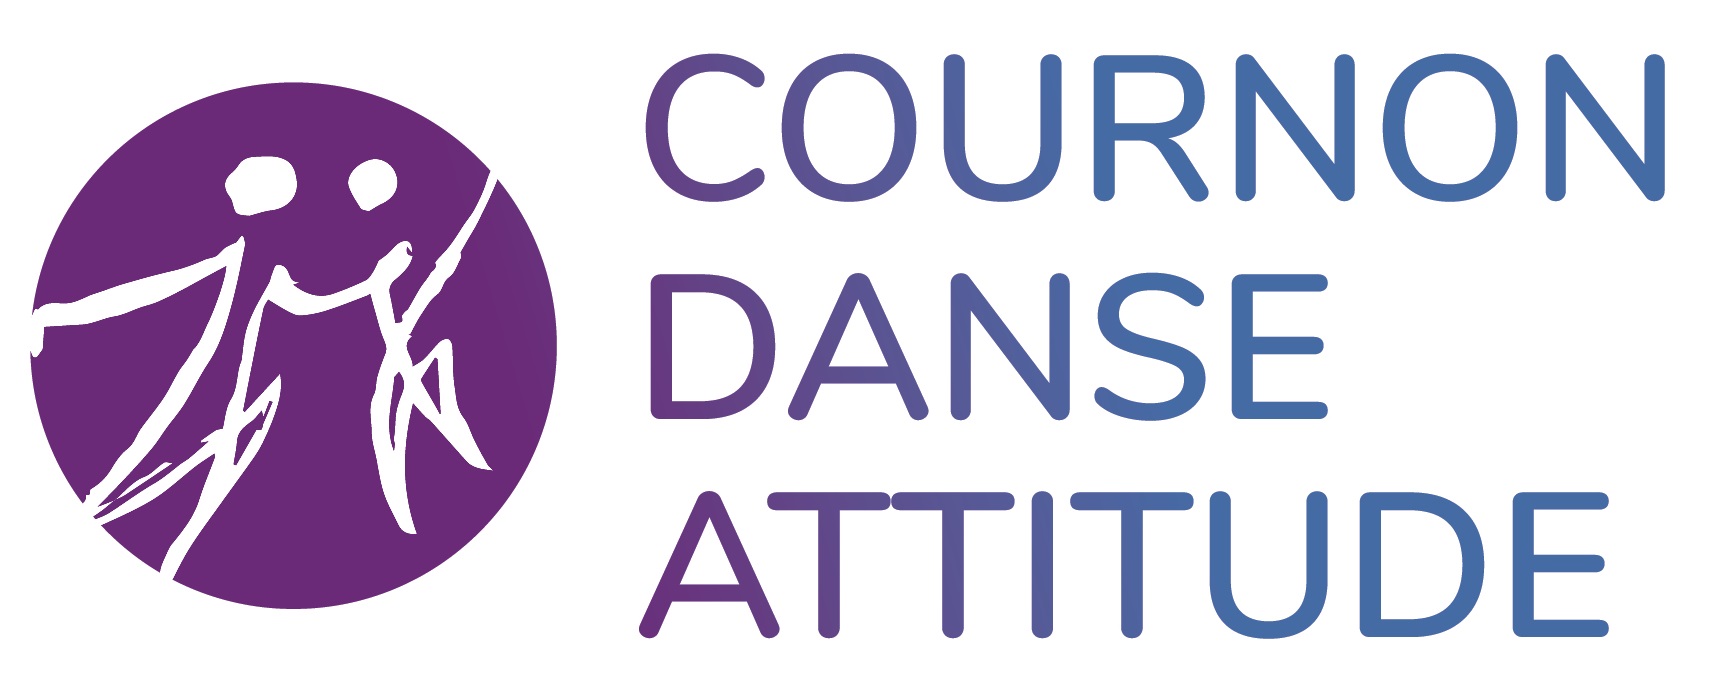 Logo Cournon Danse Attitude